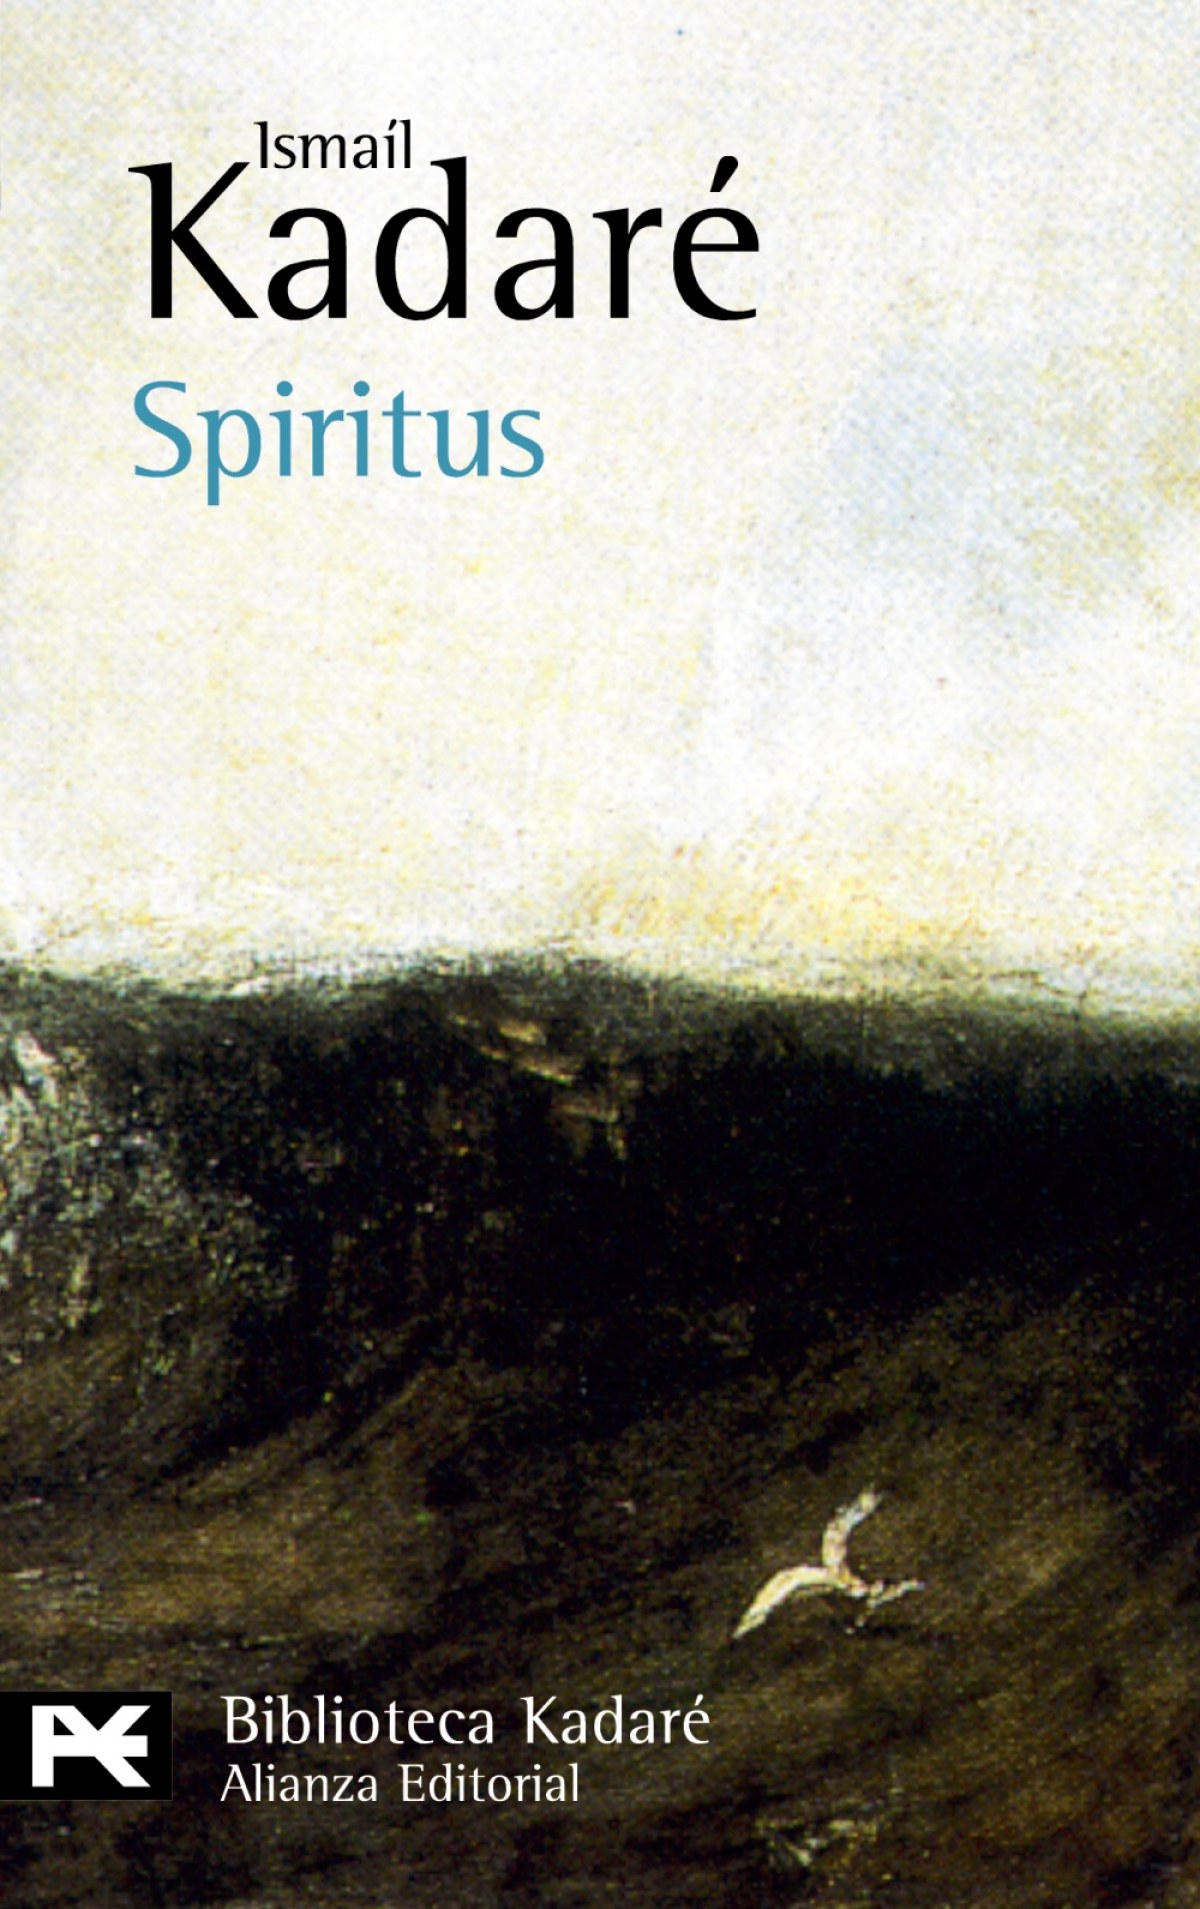 Spiritus Novela con caos, revelación y vestigios - Kadaré, Ismaíl